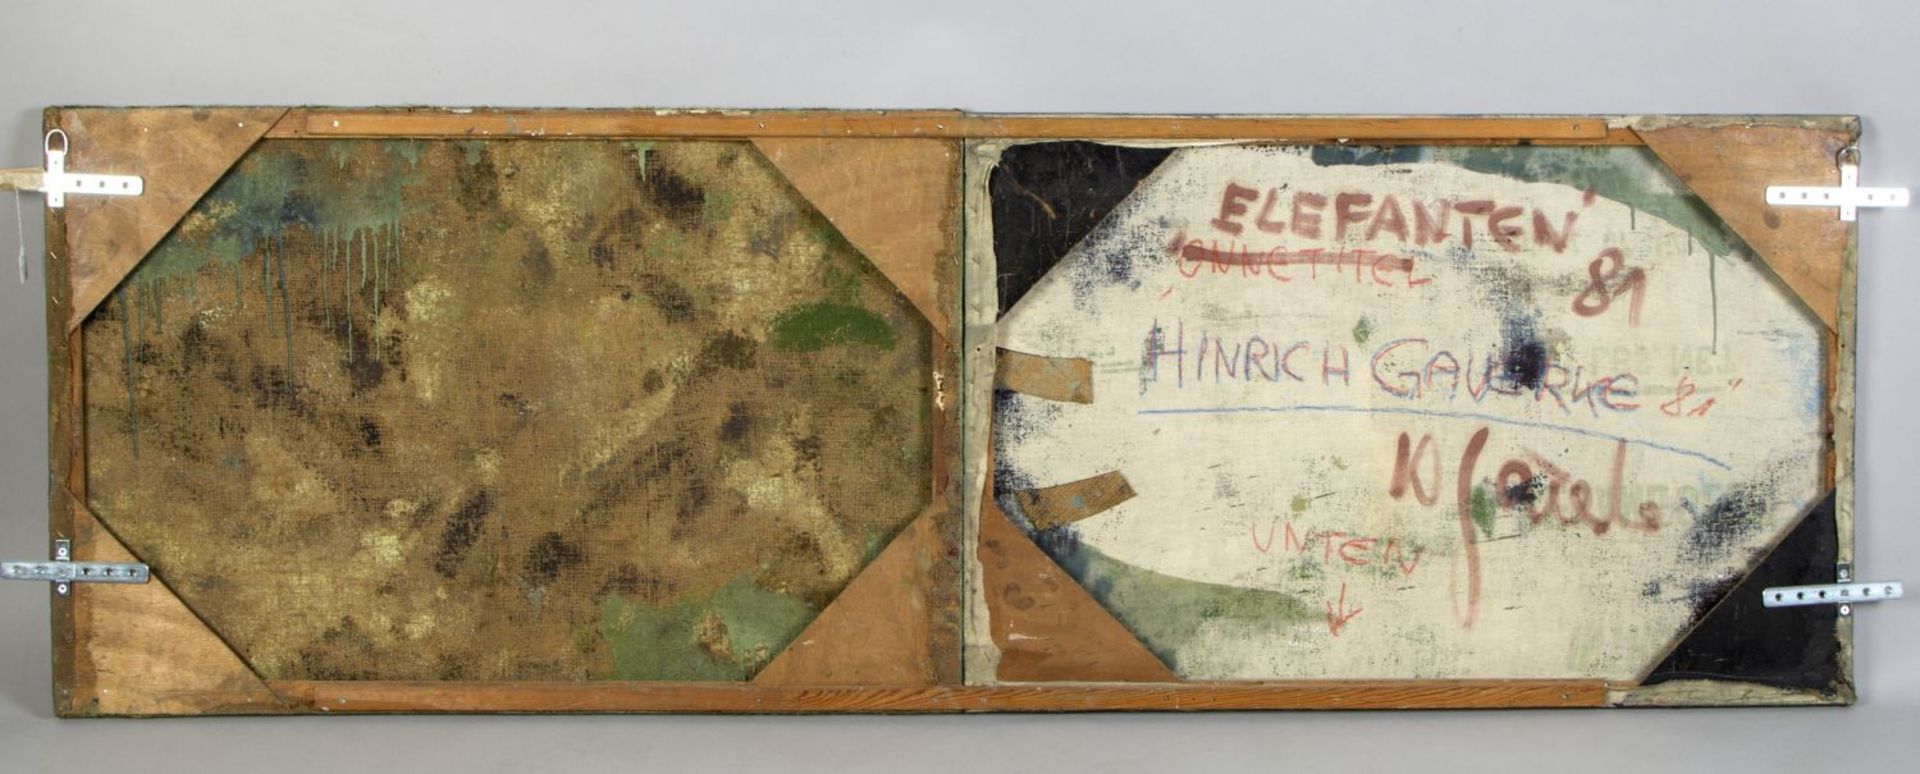 Gauerke, Hinrich. 1950 Hamburg Elefanten. Diptychon Wachs und Öl/Jute. 67 x 200,5 cm. Verso sign., b - Image 2 of 2